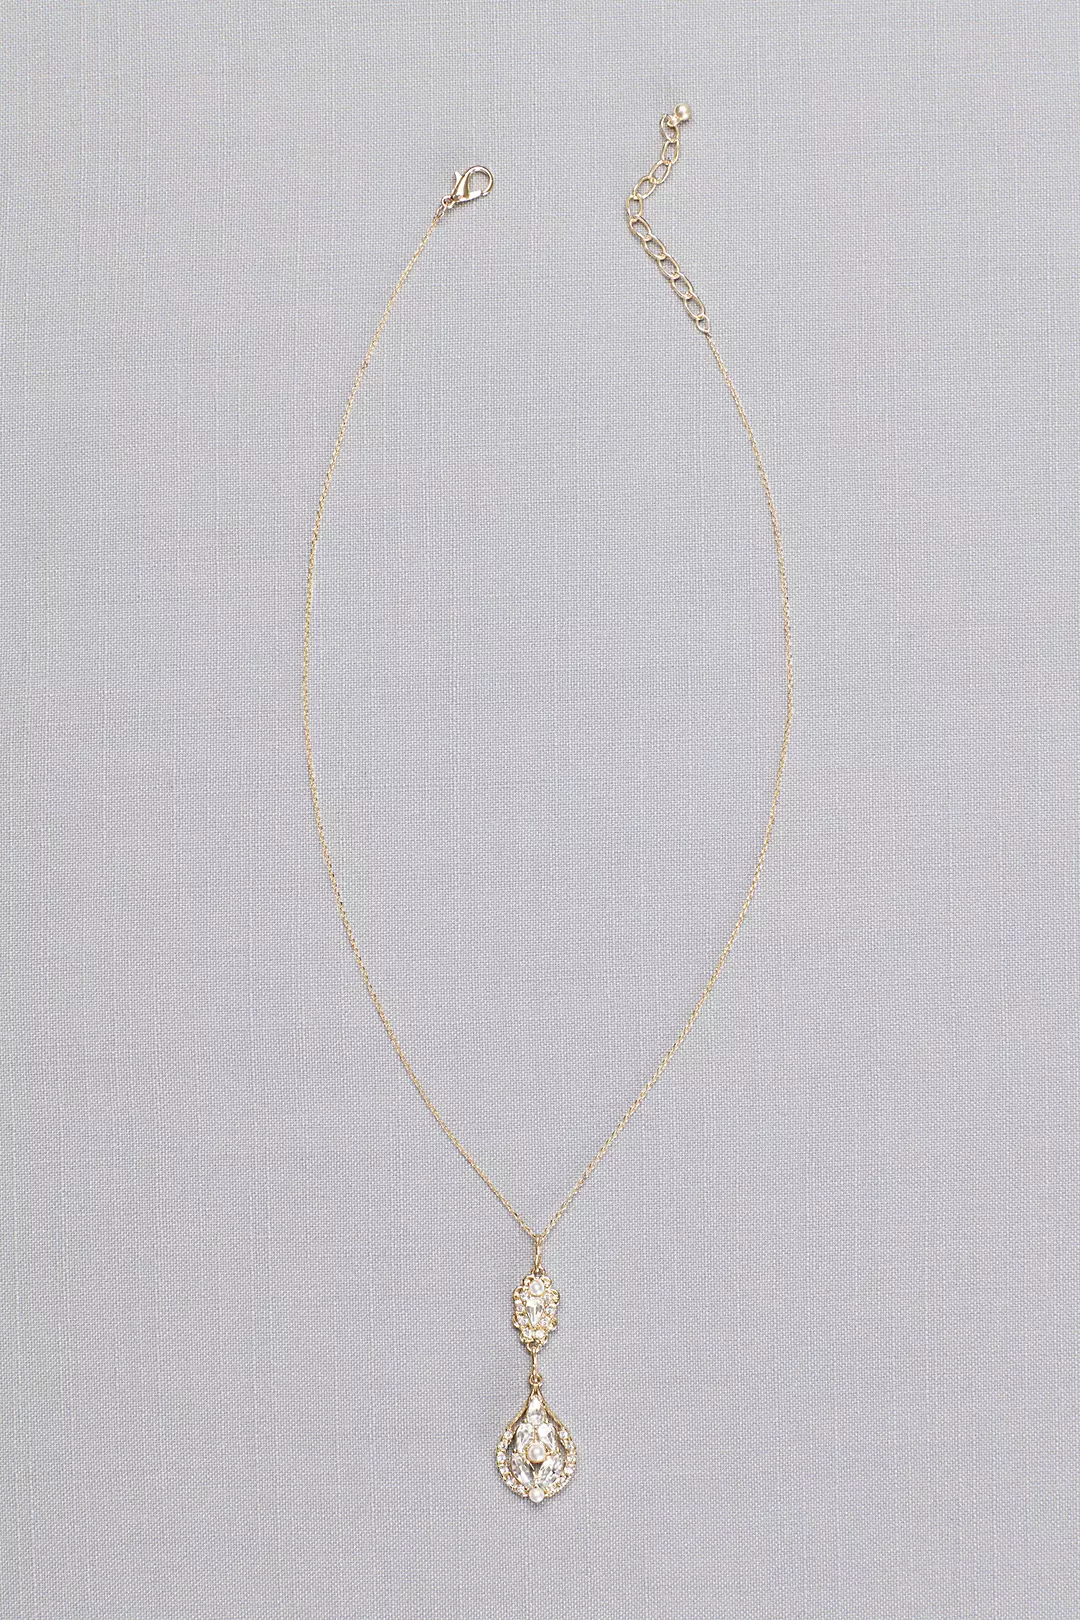 Vintage-Inspired Crystal Cluster Necklace Image